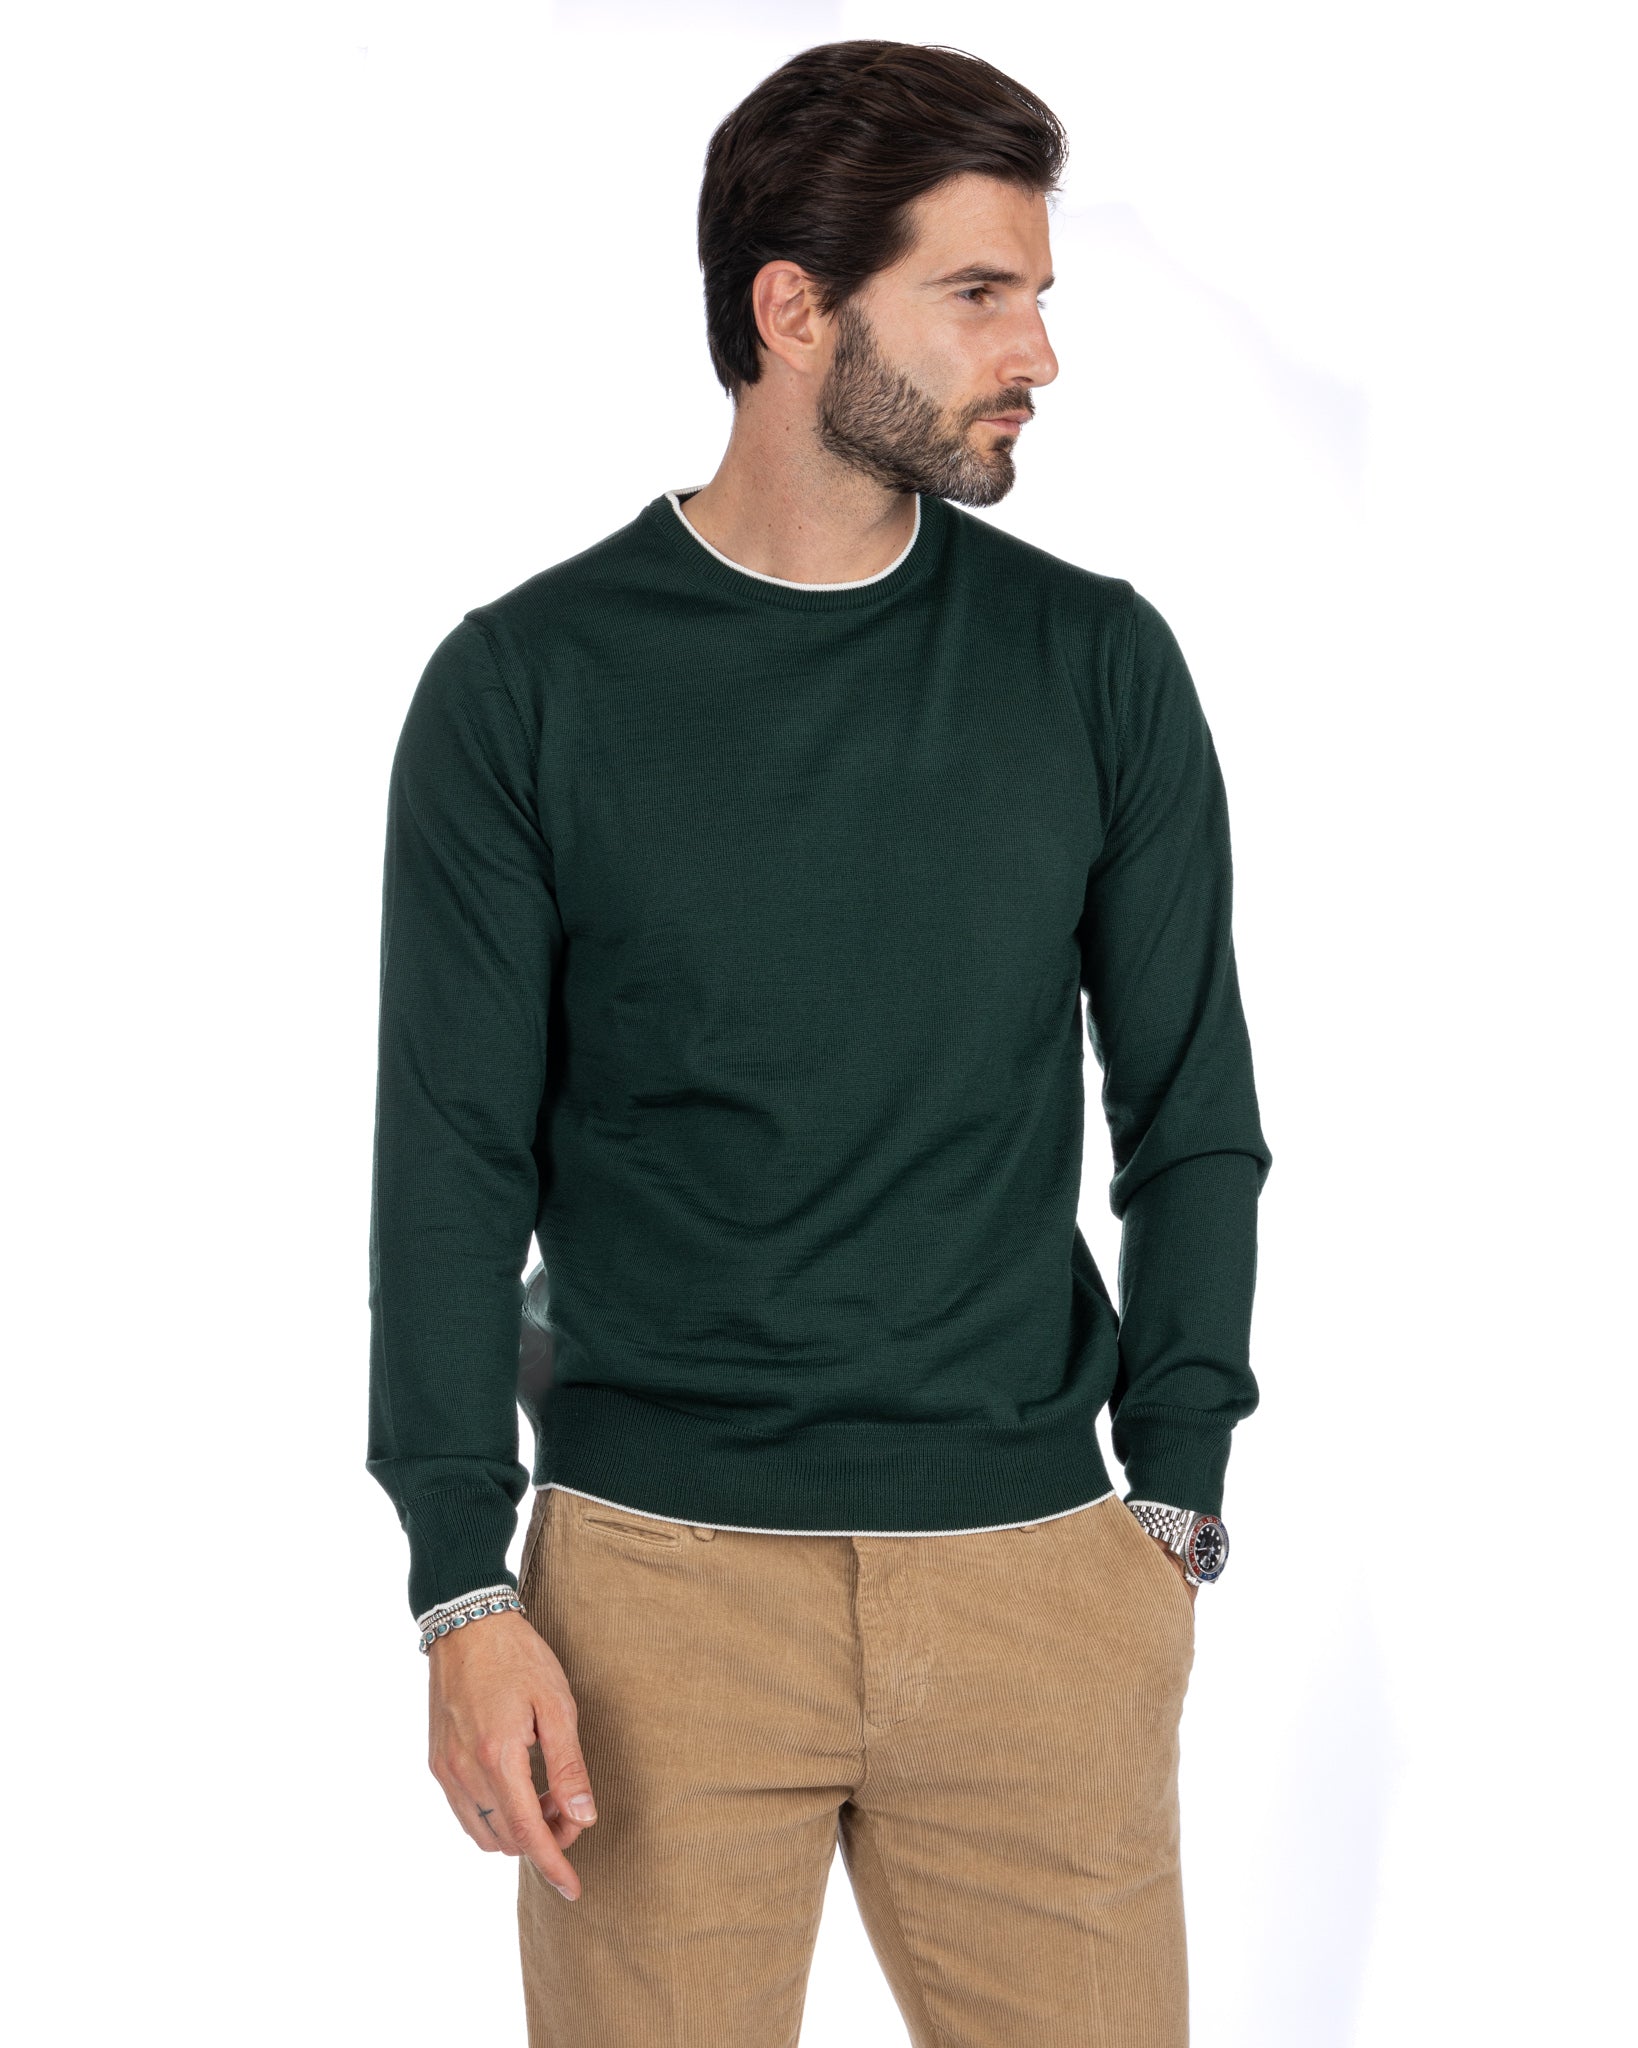 Seve - maglione verde con bordo panna